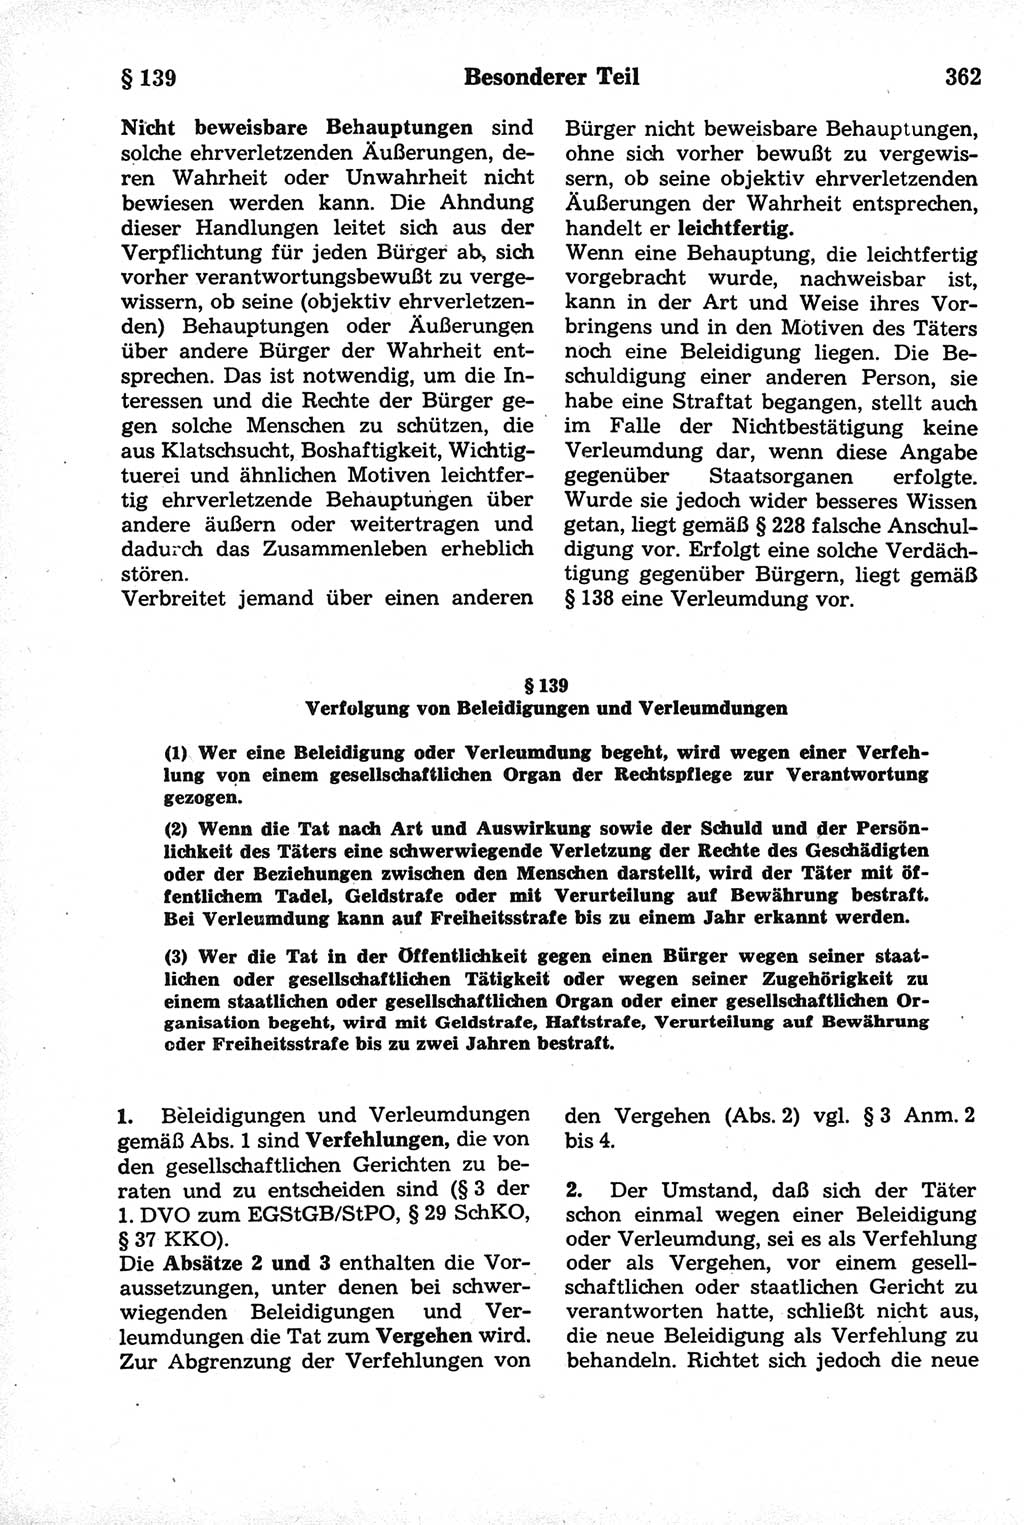 Strafrecht der Deutschen Demokratischen Republik (DDR), Kommentar zum Strafgesetzbuch (StGB) 1981, Seite 362 (Strafr. DDR Komm. StGB 1981, S. 362)